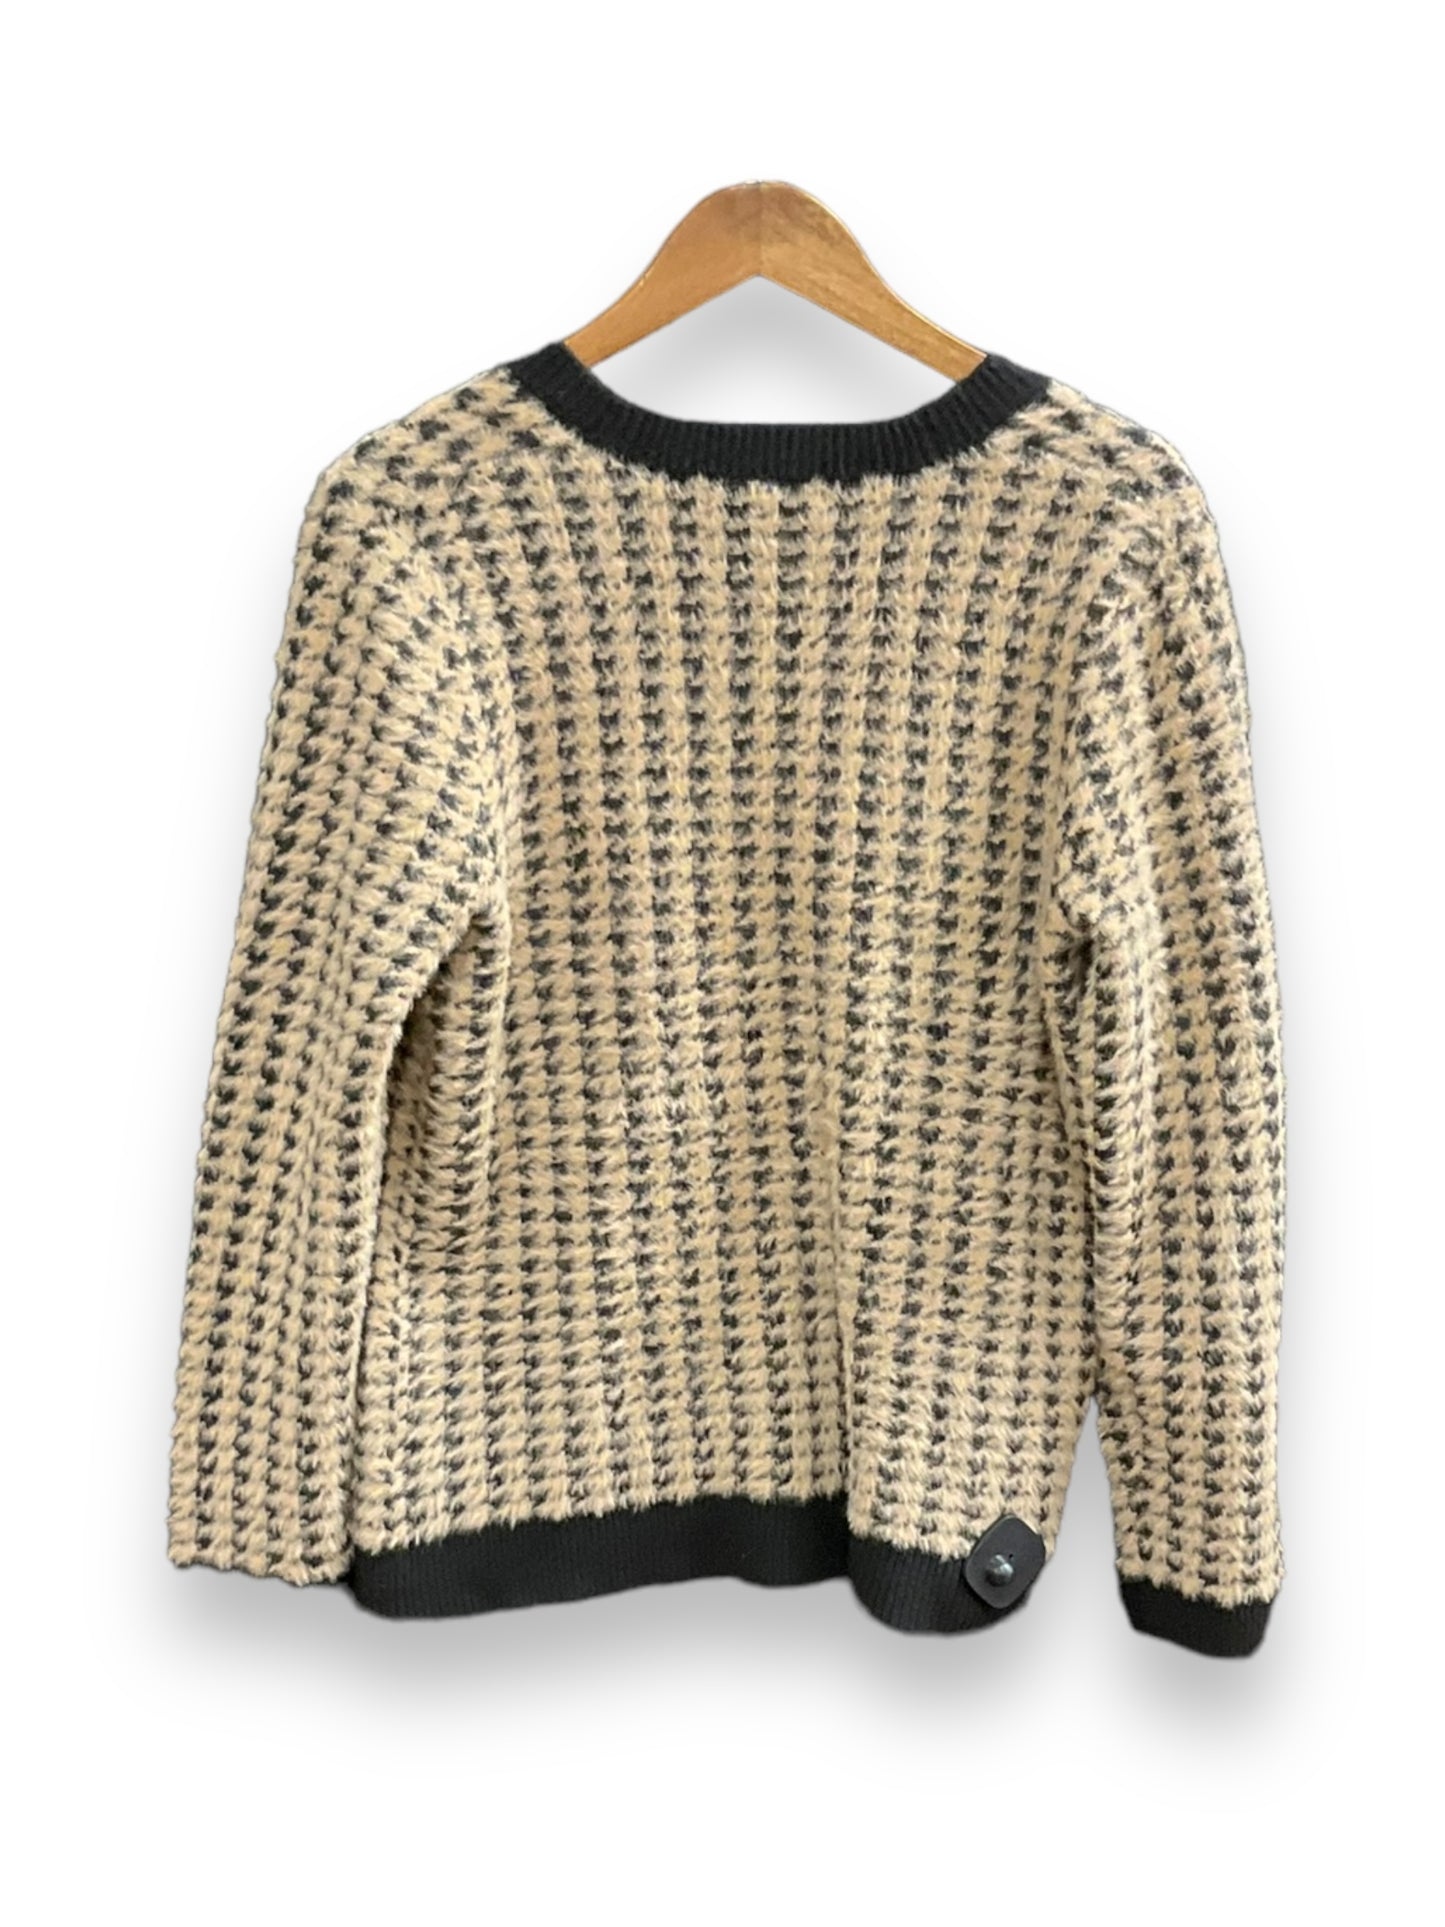 Sweater Cardigan By Tahari  Size: L